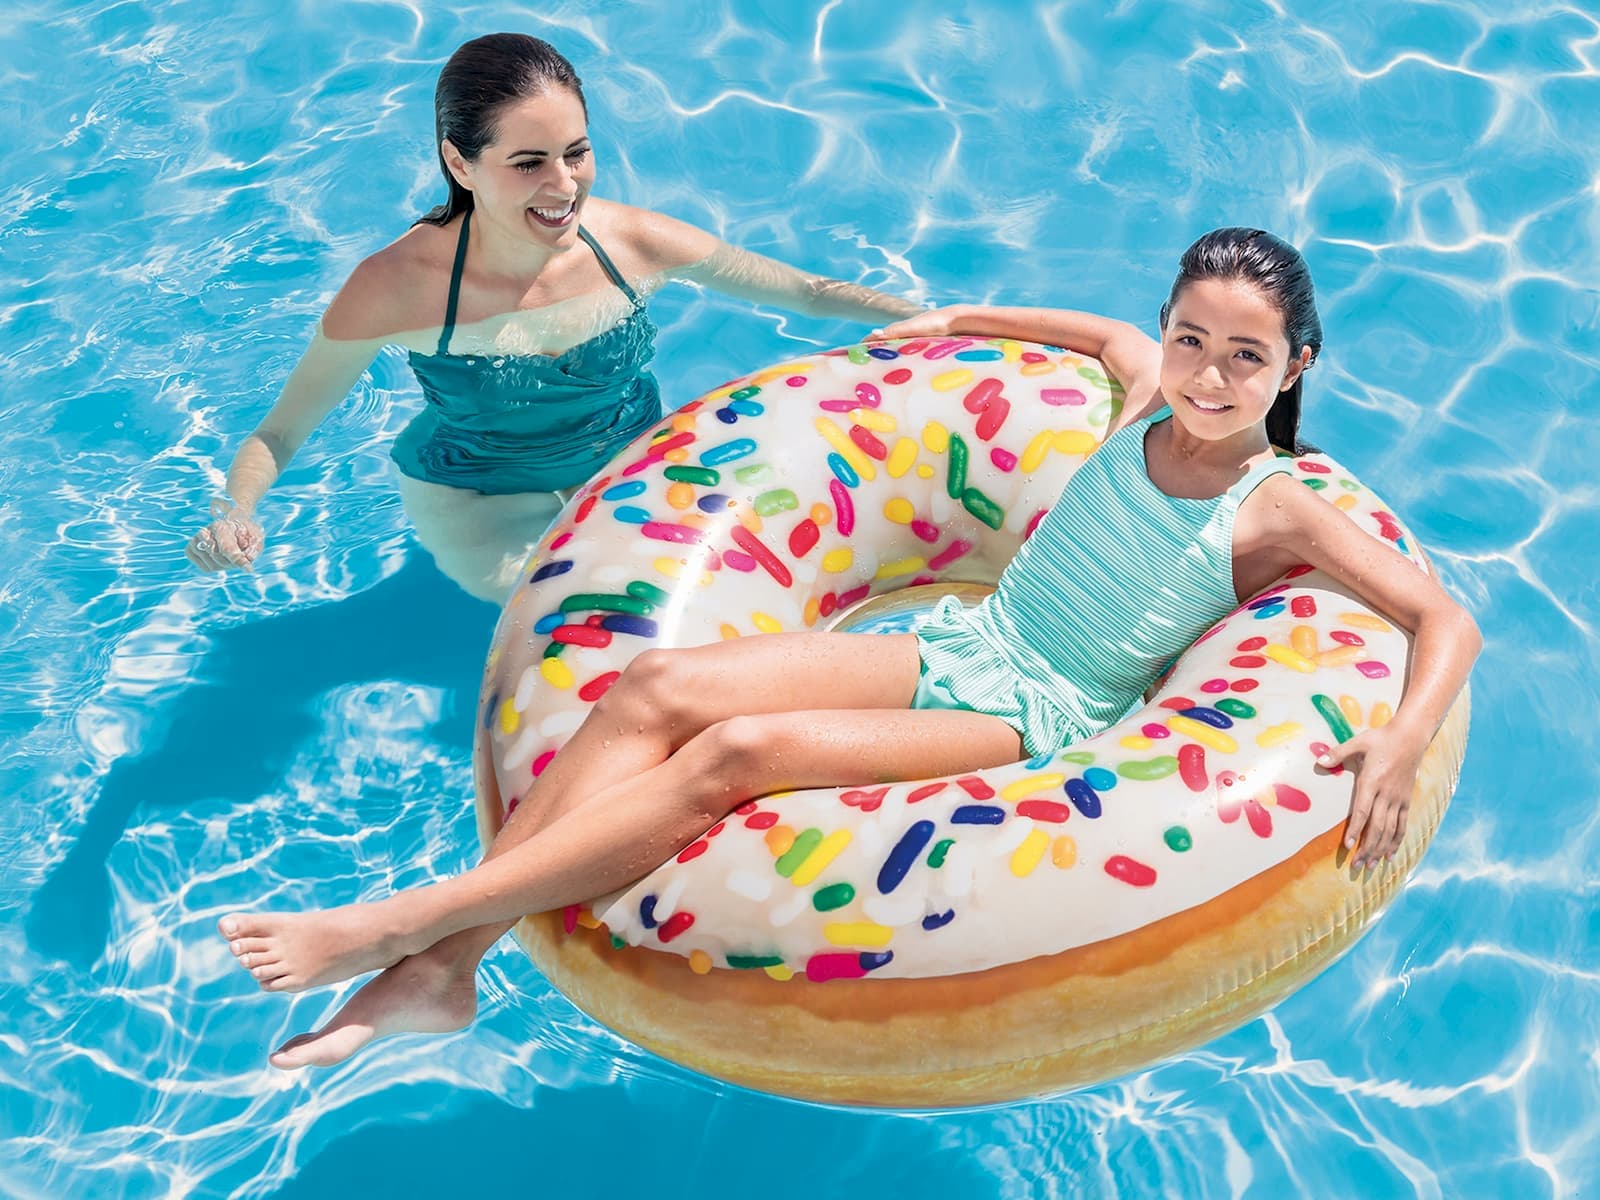 Круг для плавания Intex «Пончик в радужной глазури» 56263, 99 × 25 см, от 9 лет